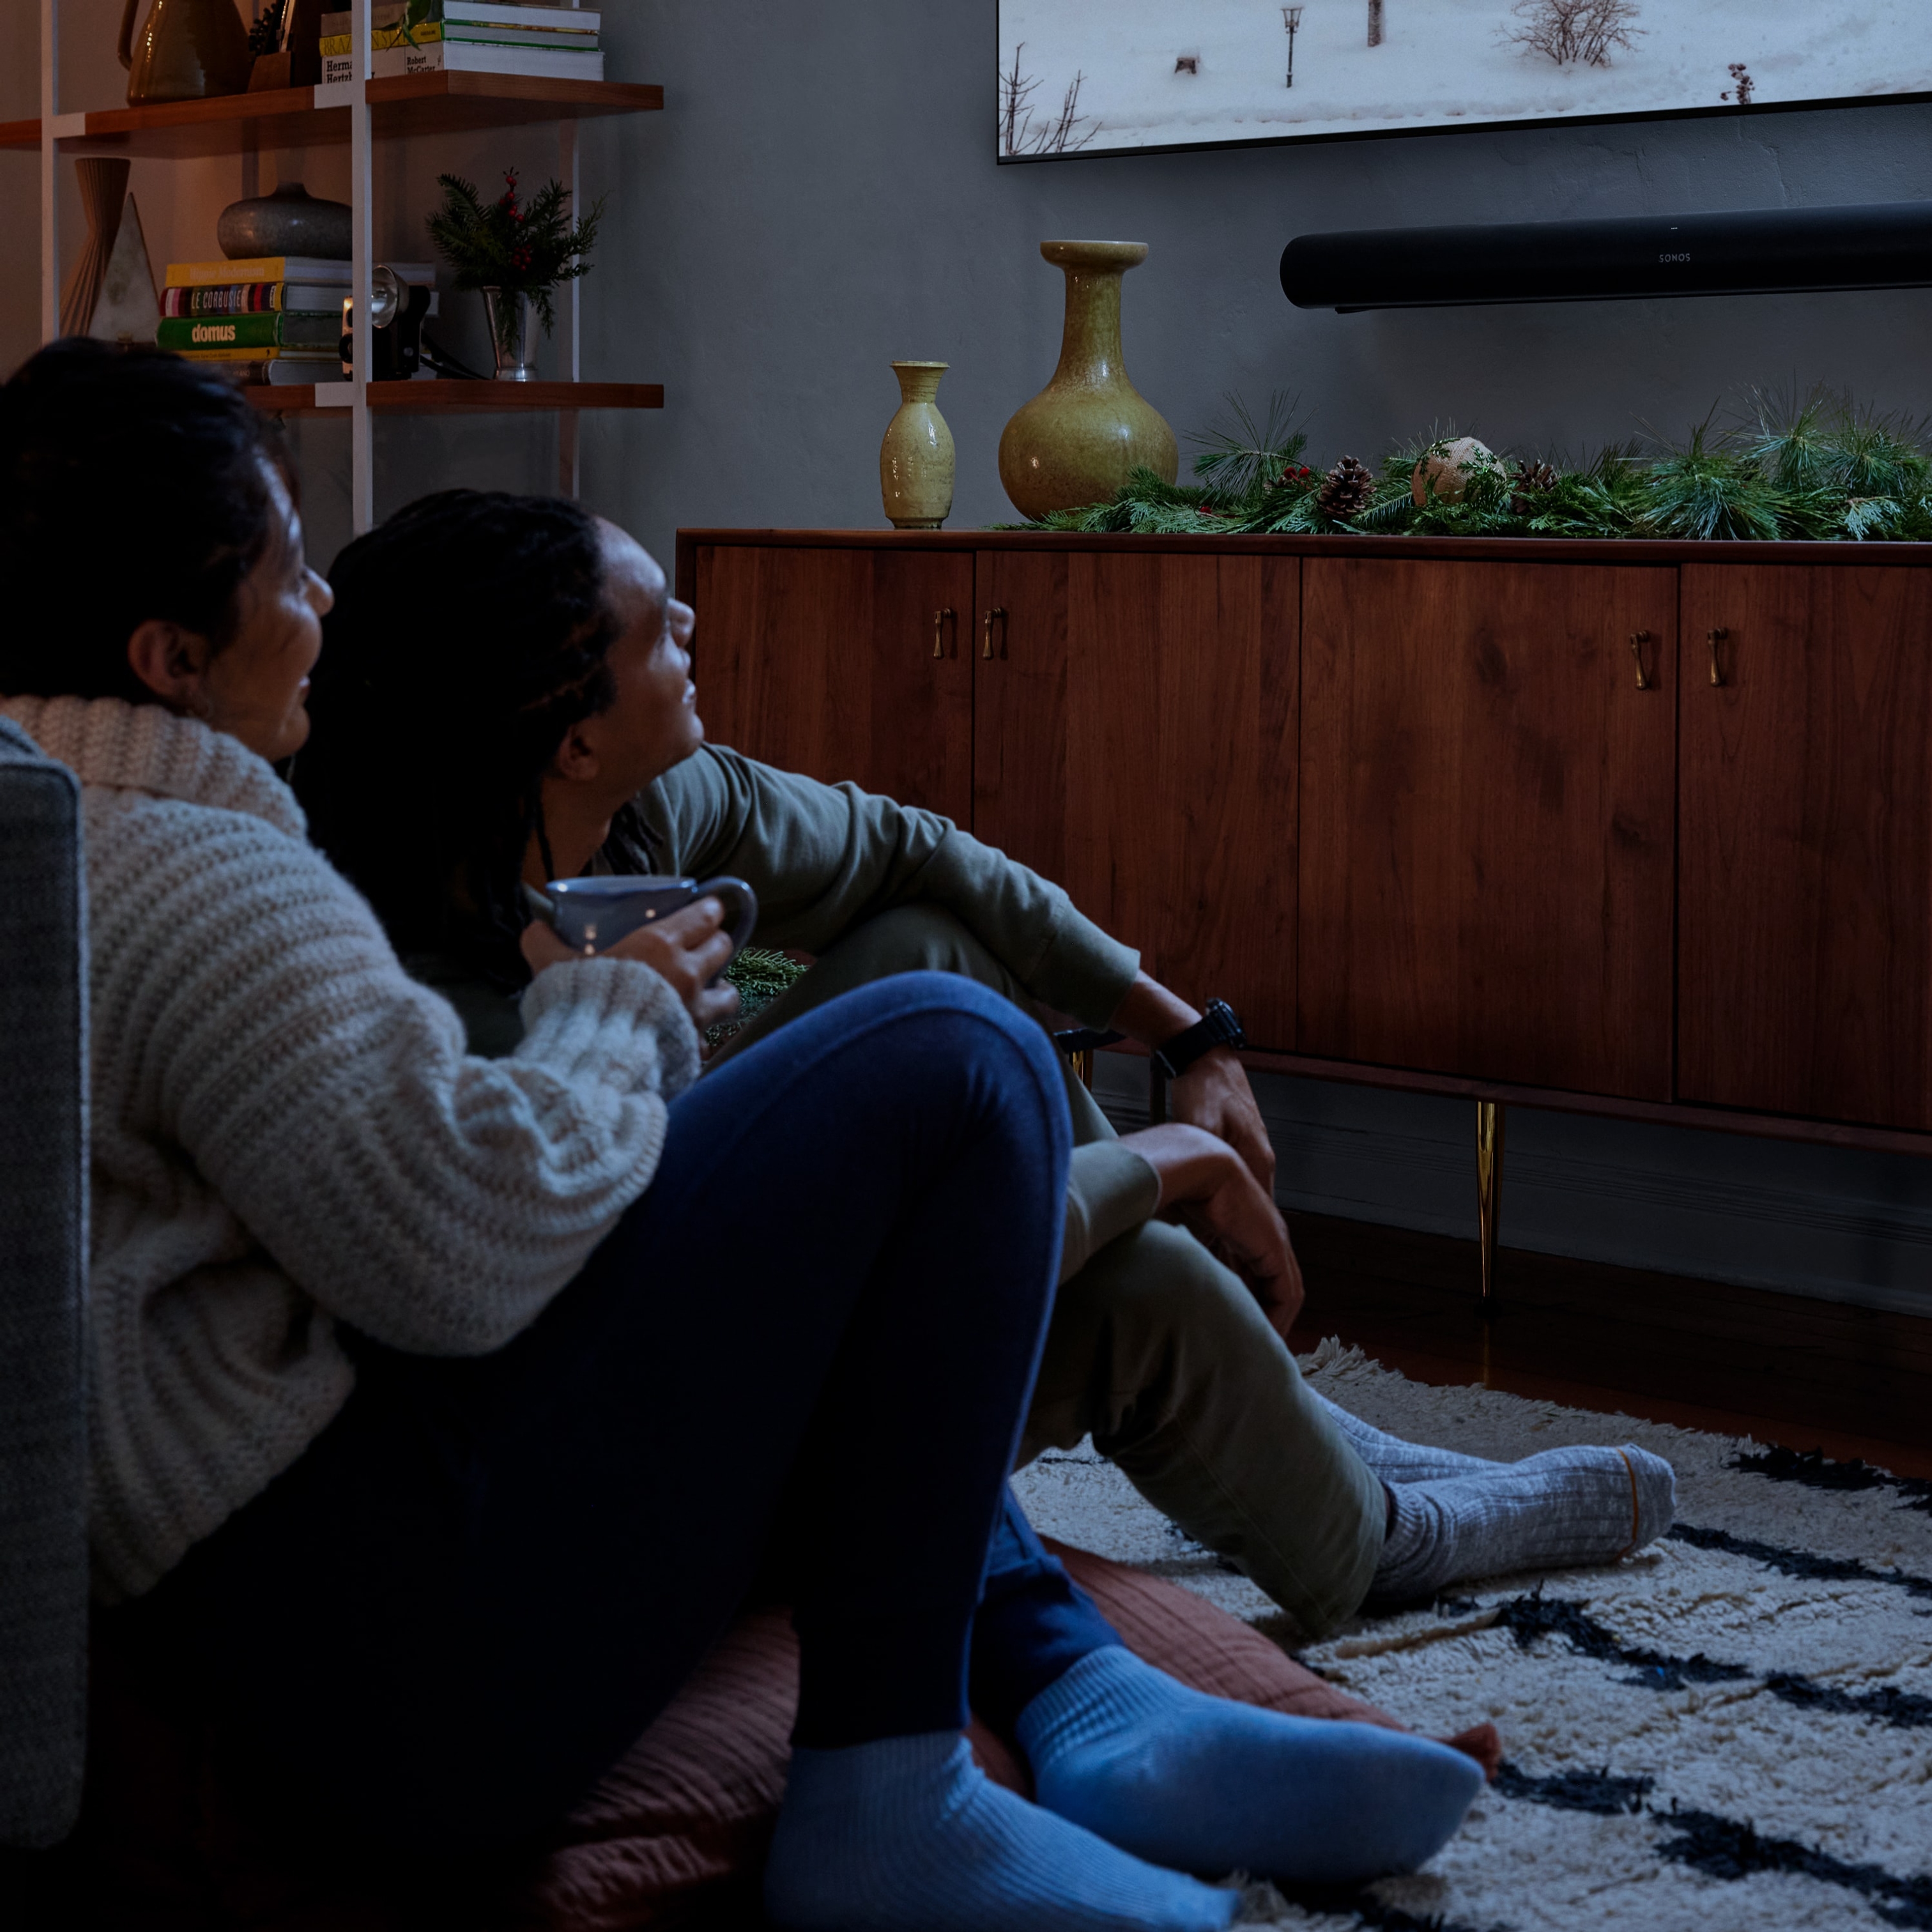 Couple regardant un film sur un téléviseur connecté à Sonos Arc et Sub